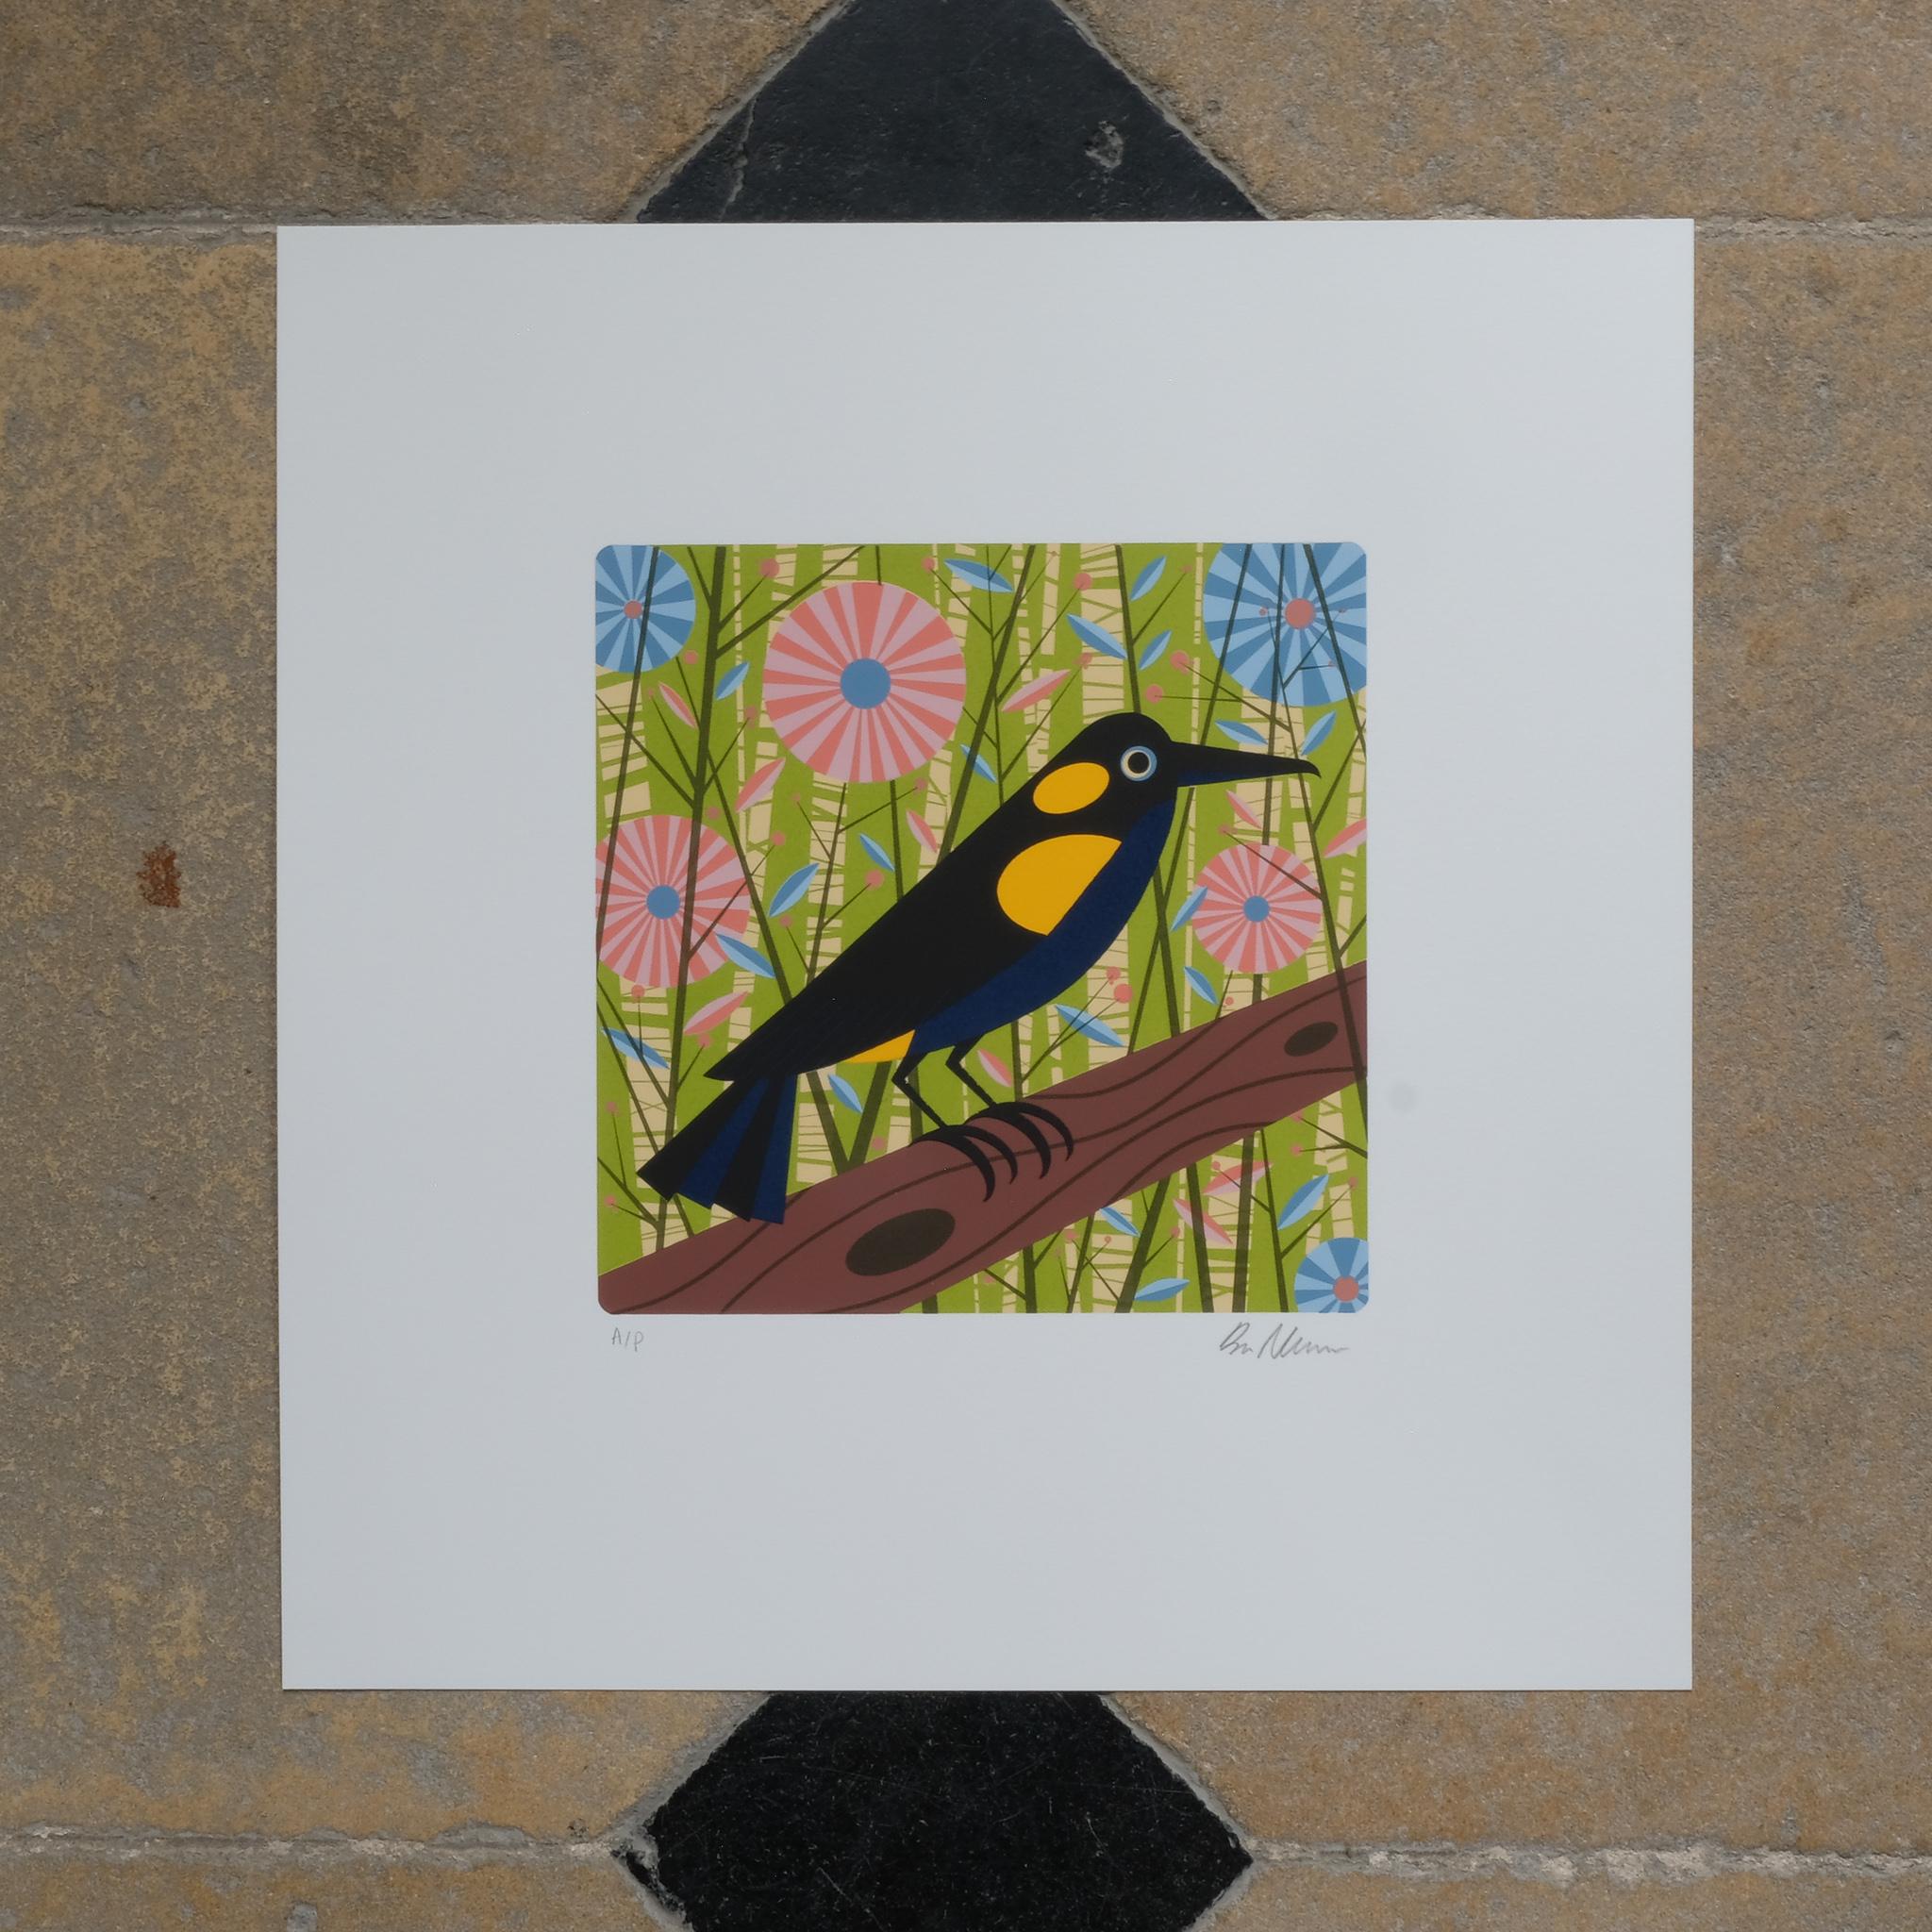 Farbsiebdruck, 2011, auf Somerset 300gsm Papier, mit Bleistift signiert, bezeichnet 'A/P' (ein Künstlerabzug außerhalb der Auflage von 125), aus dem Portfolio Ghosts of Gone Birds, gedruckt und herausgegeben von Jealous, London, das ganze Blatt, in